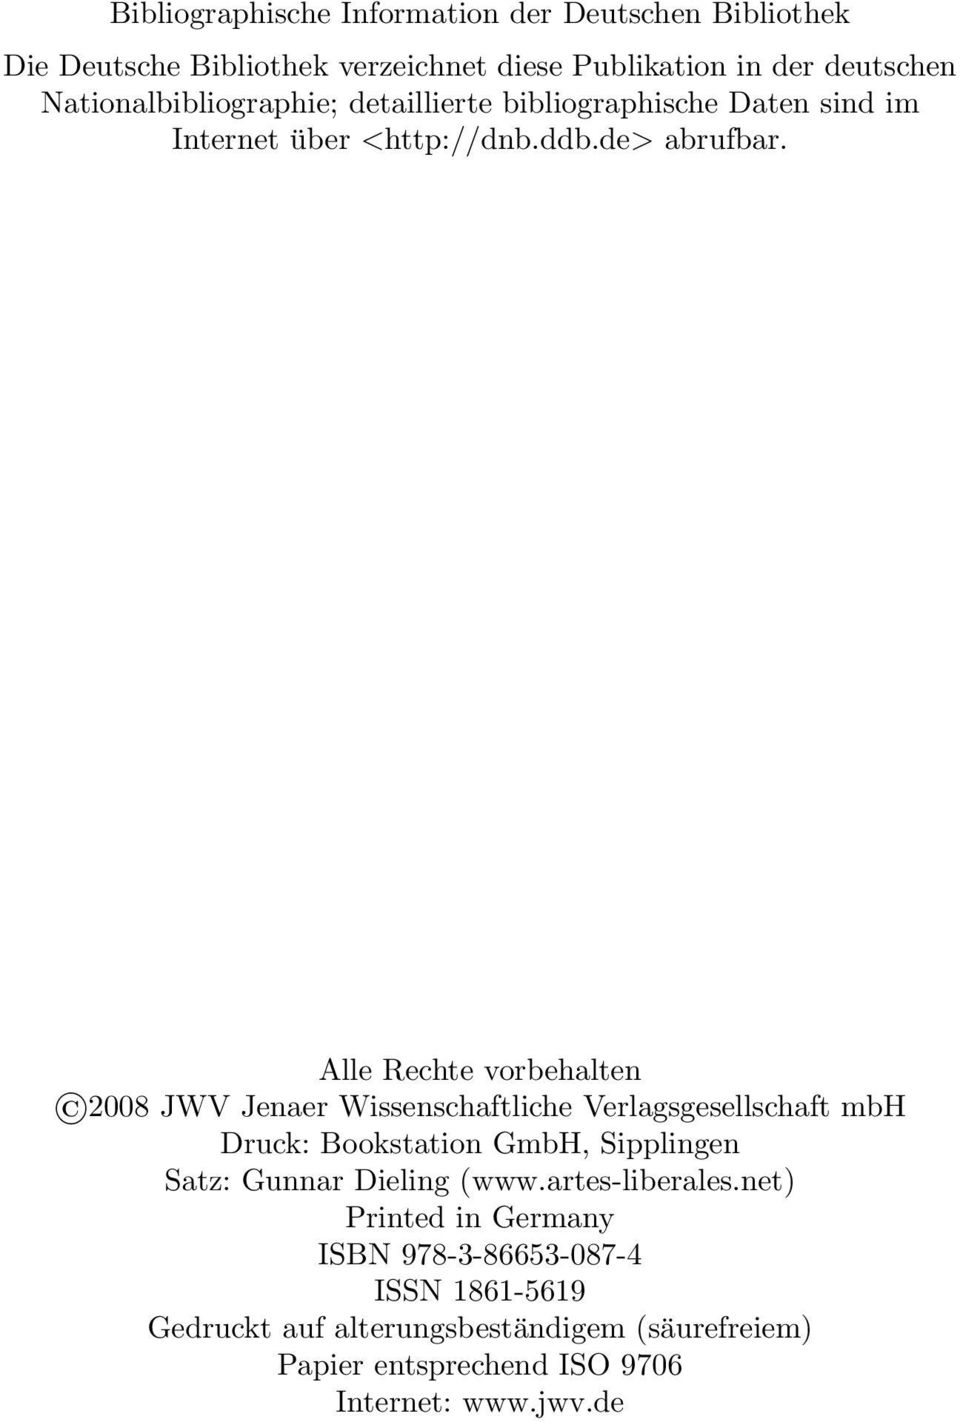 Alle Rechte vorbehalten 2008 JWV Jenaer Wissenschaftliche Verlagsgesellschaft mbh Druck: Bookstation GmbH, Sipplingen Satz: Gunnar Dieling